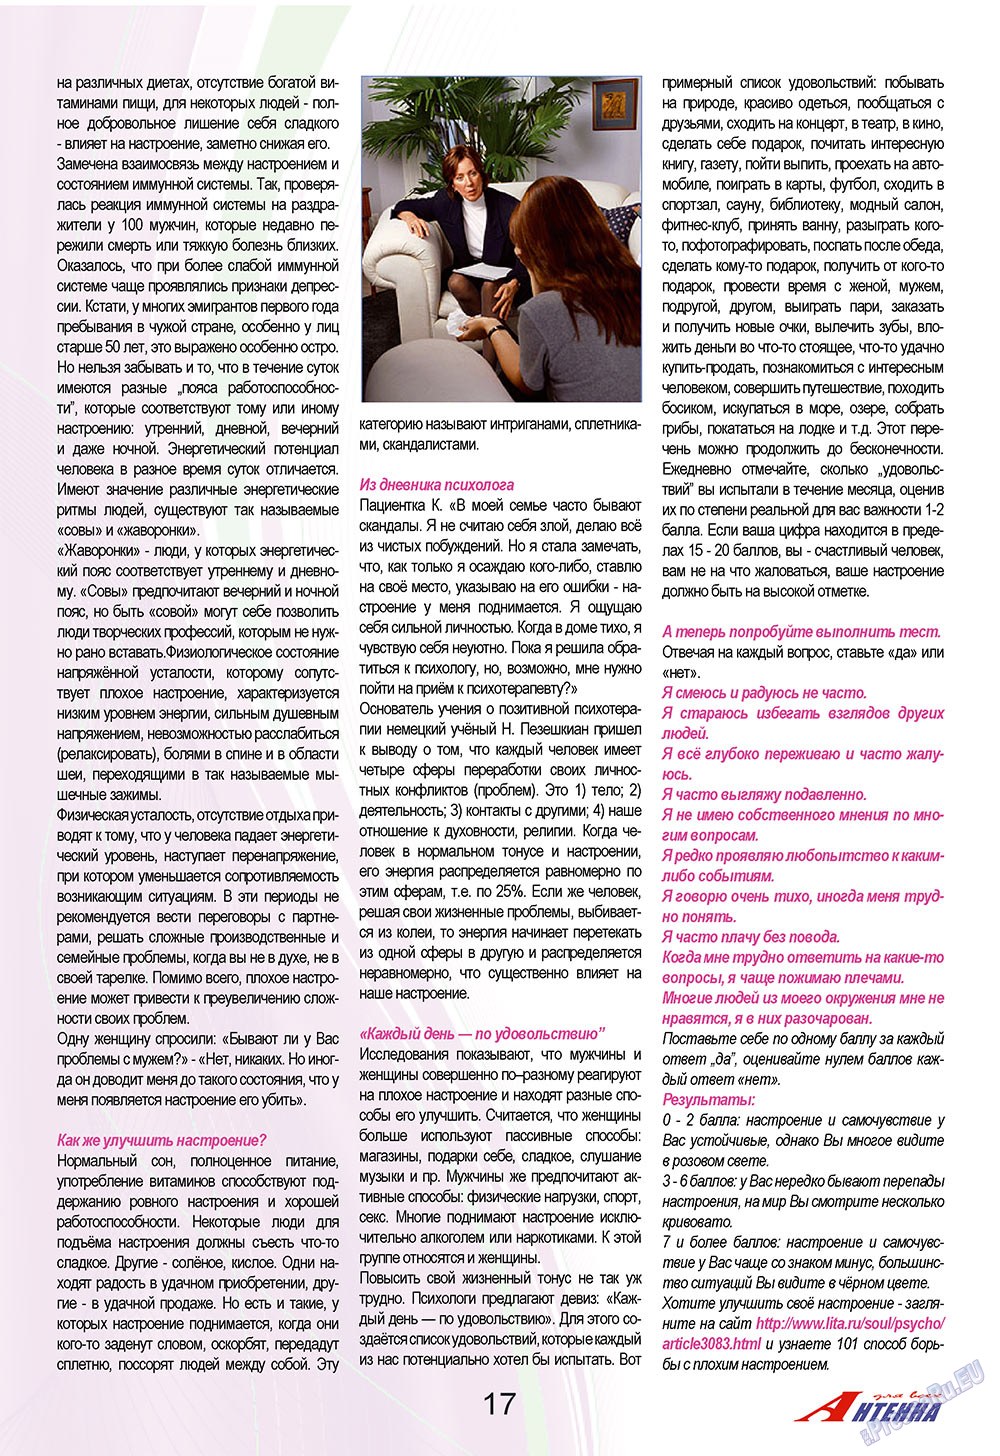 Антенна, журнал. 2009 №9 стр.17